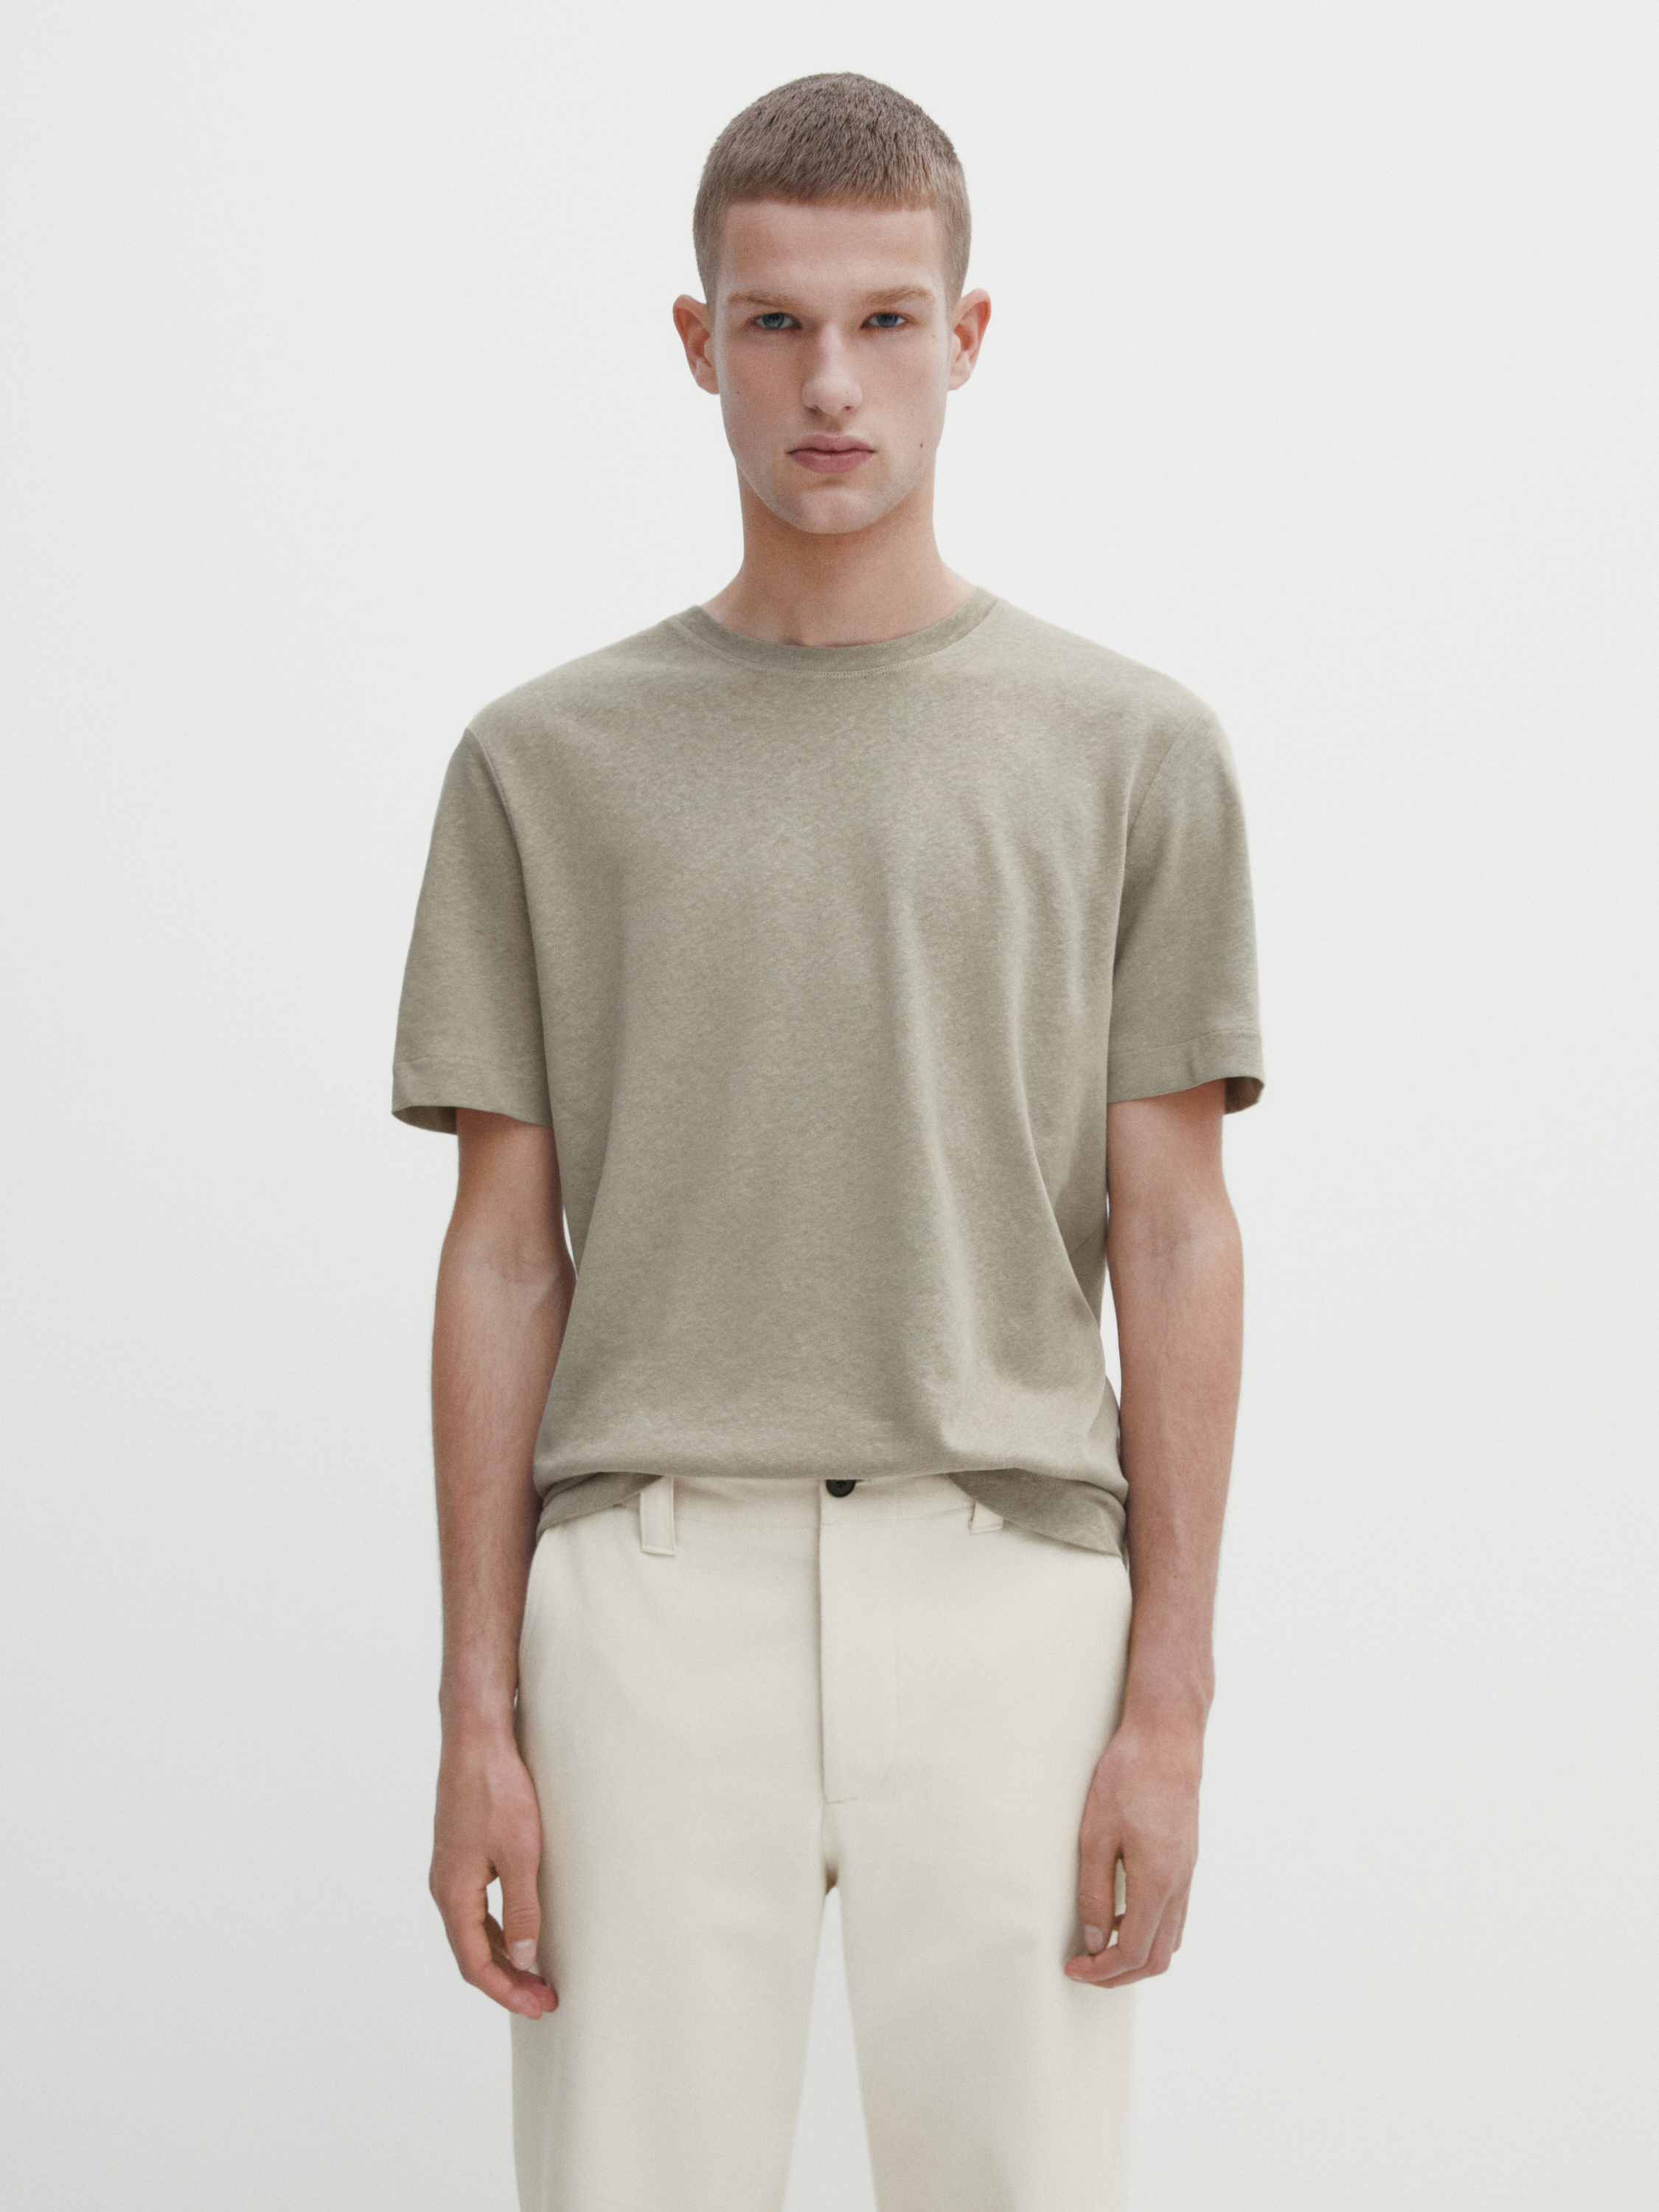 Short sleeve linen and cotton blend T-shirt